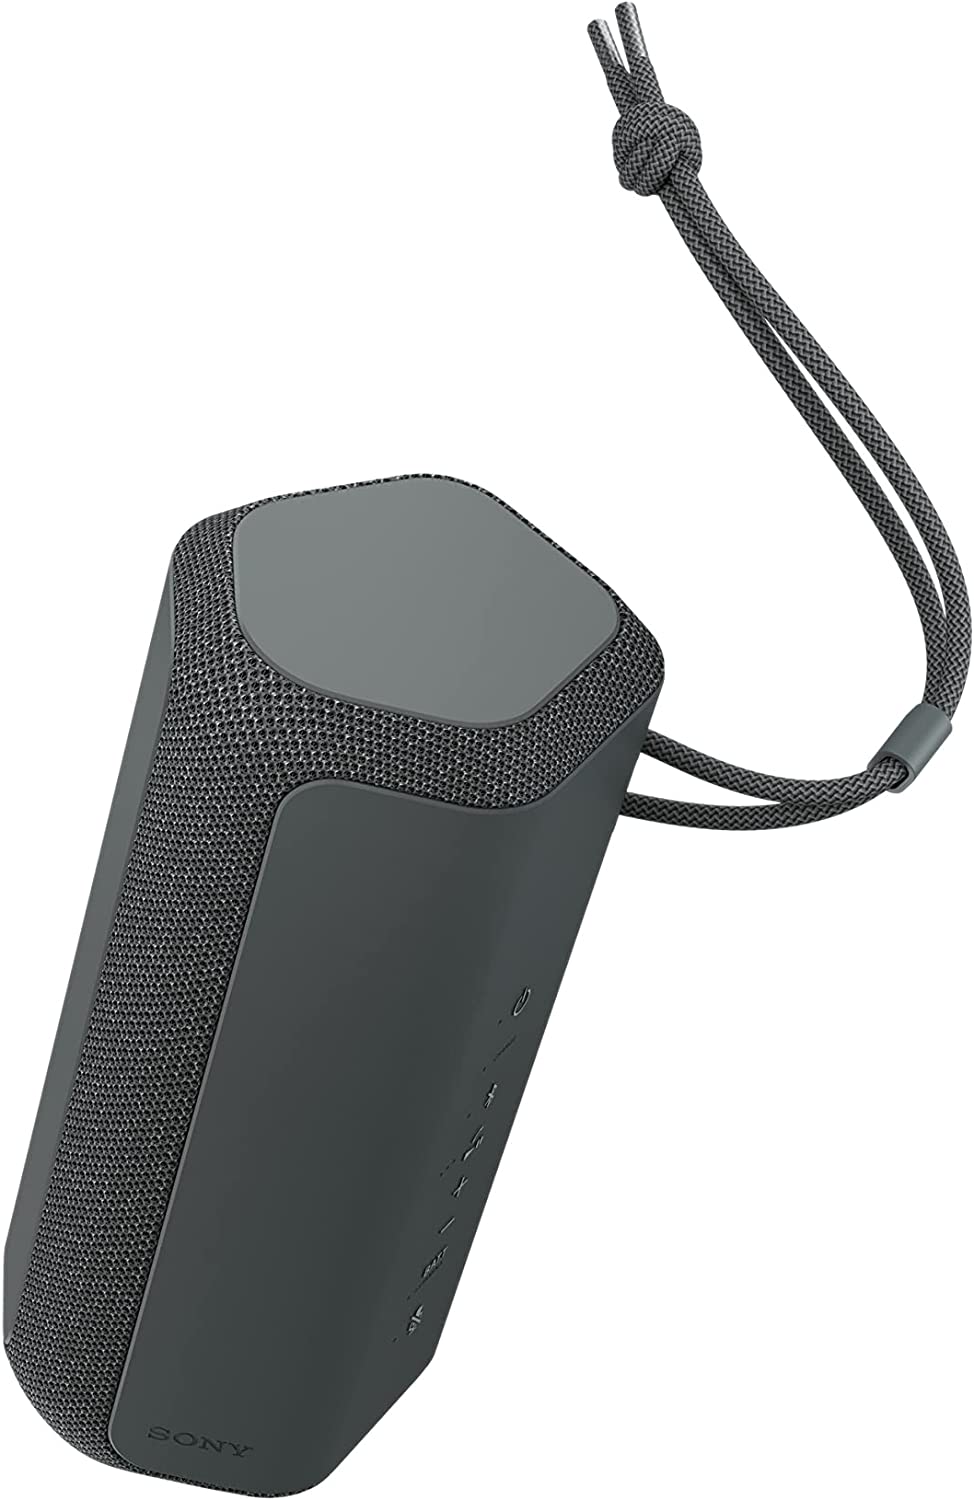 SONY SRS-XE300 Bluetooth Portable Speaker | Speakers in Dar Tanzania